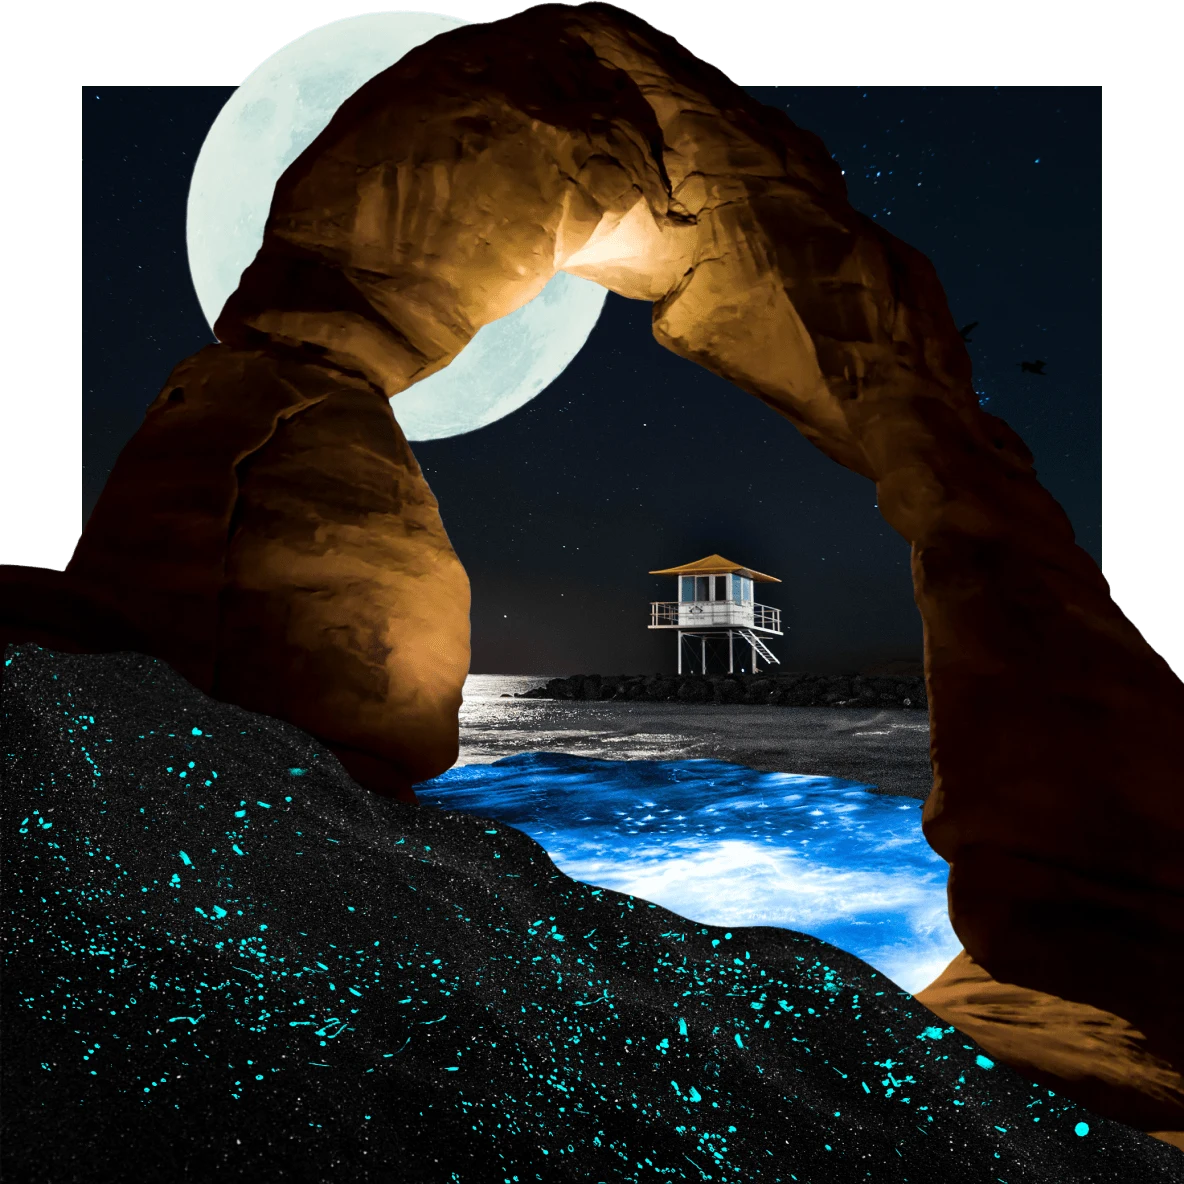 Uma poça d'água iluminada sob um arco de rocha vermelha. Lua cheia brilhando ao fundo e um bangalô em palafita com escadas sobre as rochas do oceano. Ondas escuras com manchas azul neon em primeiro plano.